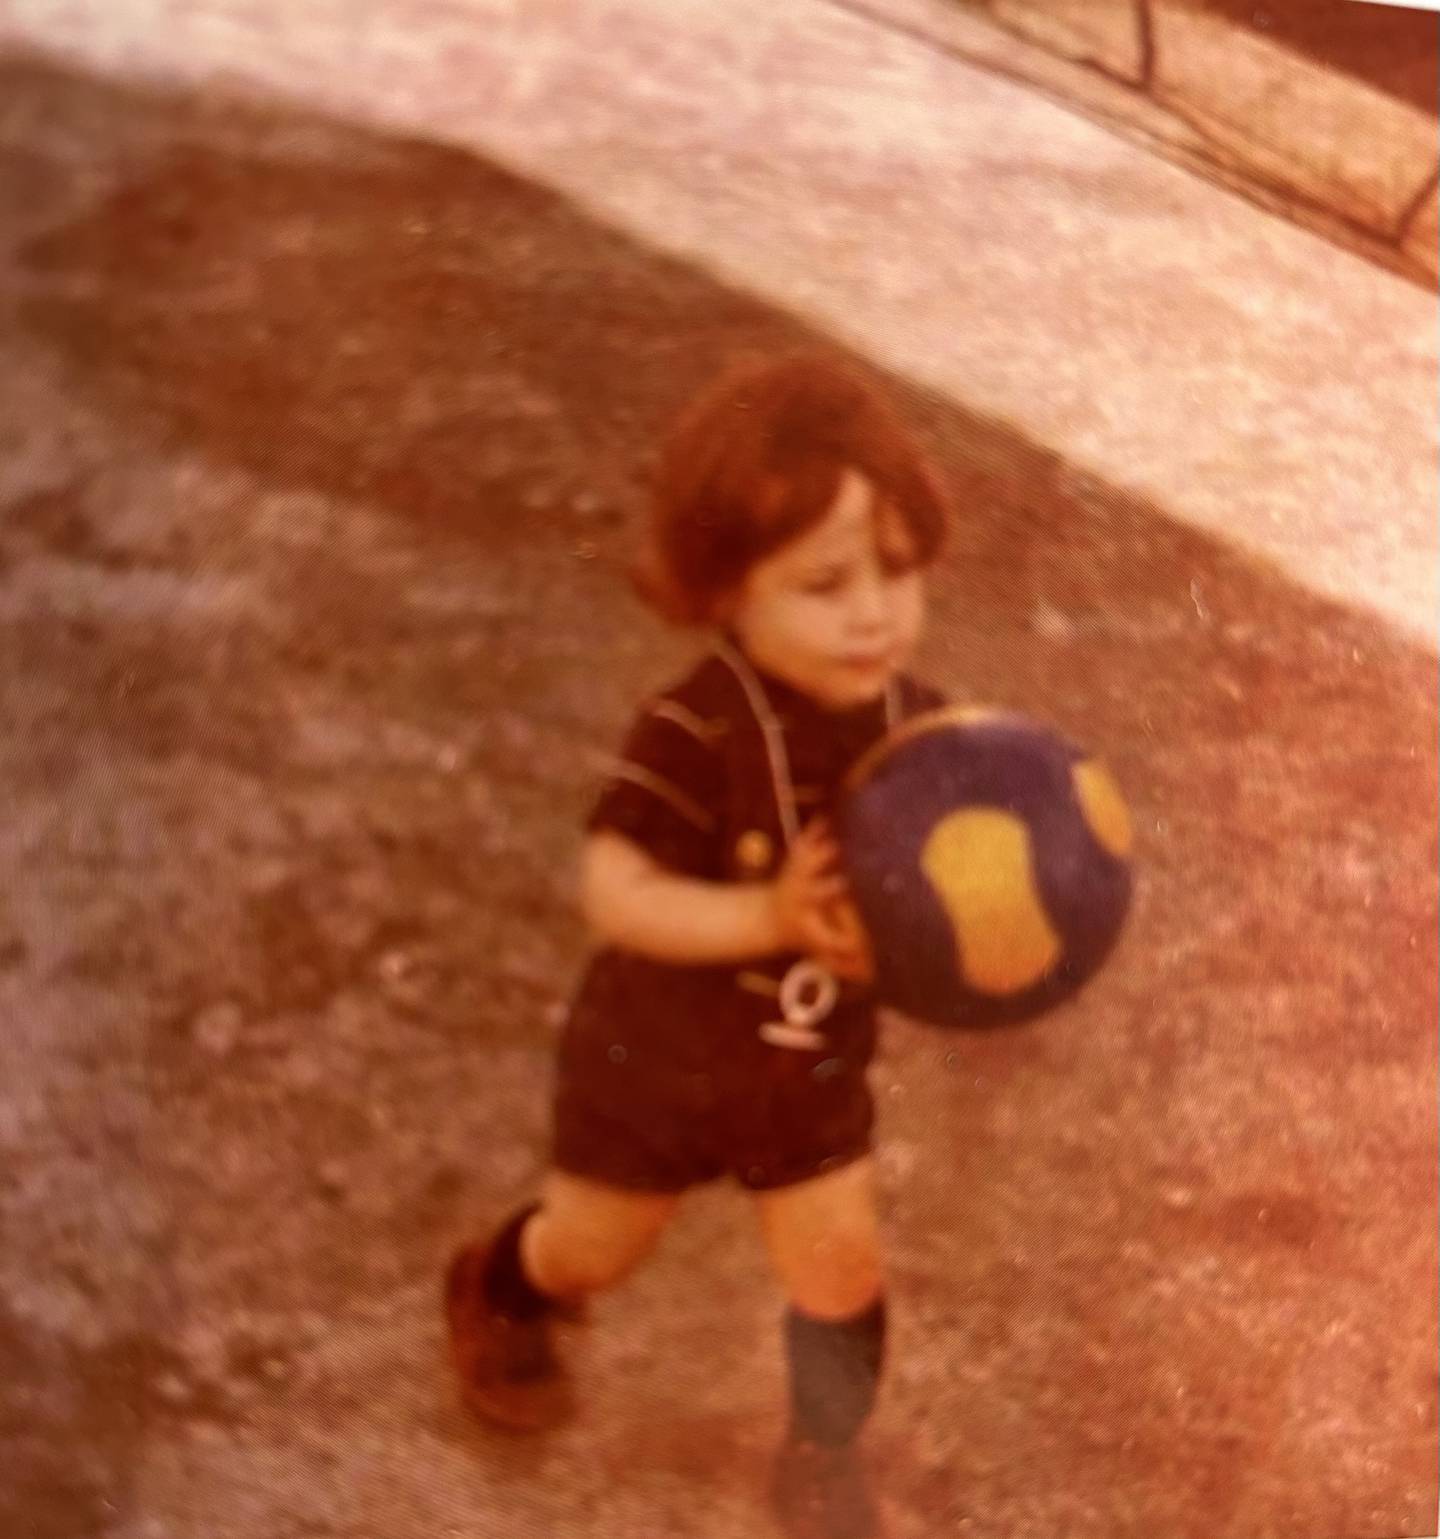 Santiago Acosta creció en Perú, México y Argentina. Aunque dice ser aficionado al River Plate, su primera fotografía con una bola es con un balón del Boca Juniors.